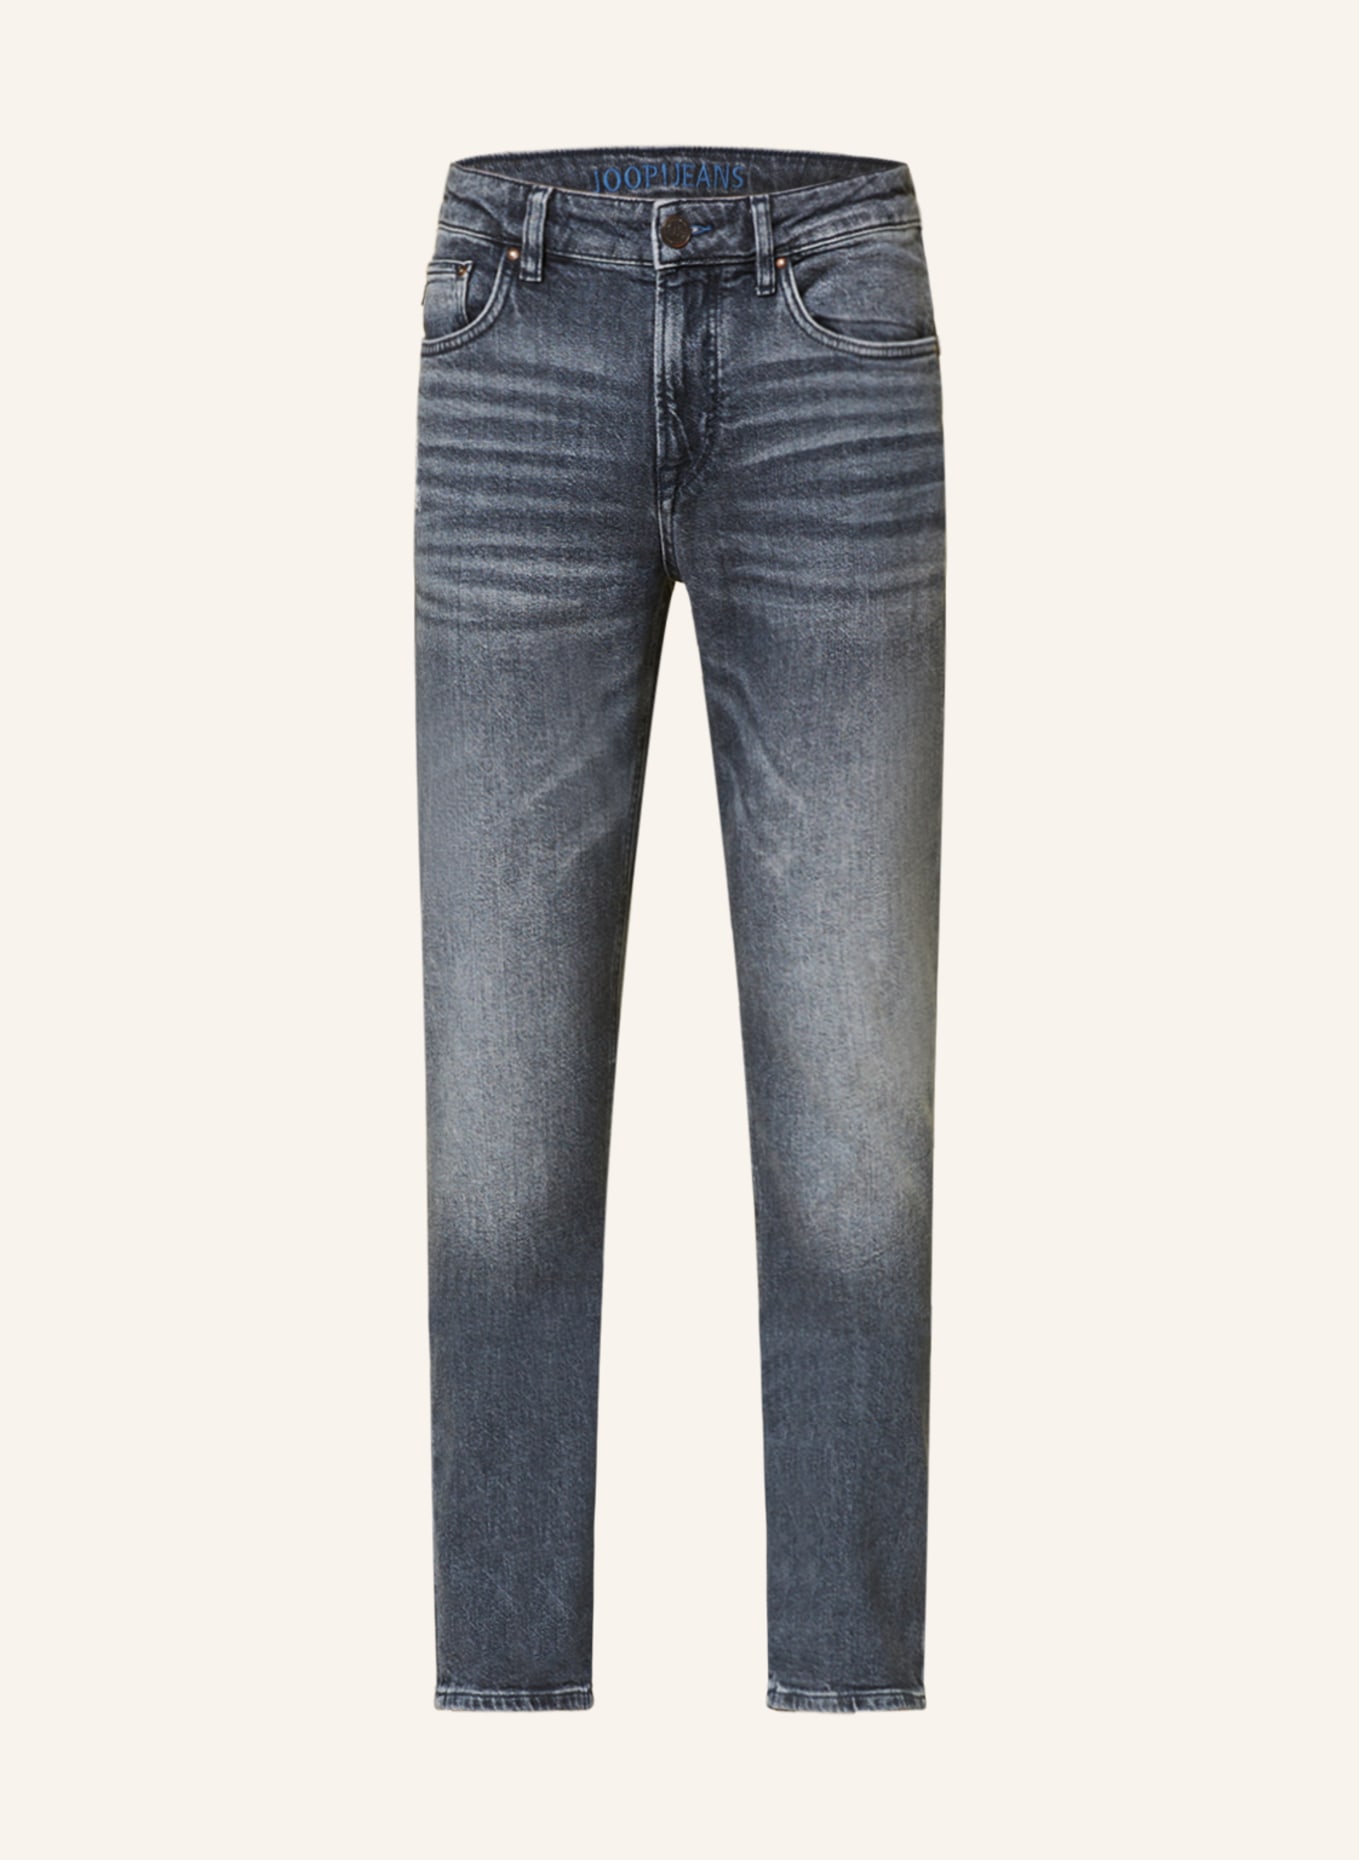 JOOP! JEANS Jeans MITCH Modern Fit, Farbe: 431 Bright Blue                431 (Bild 1)